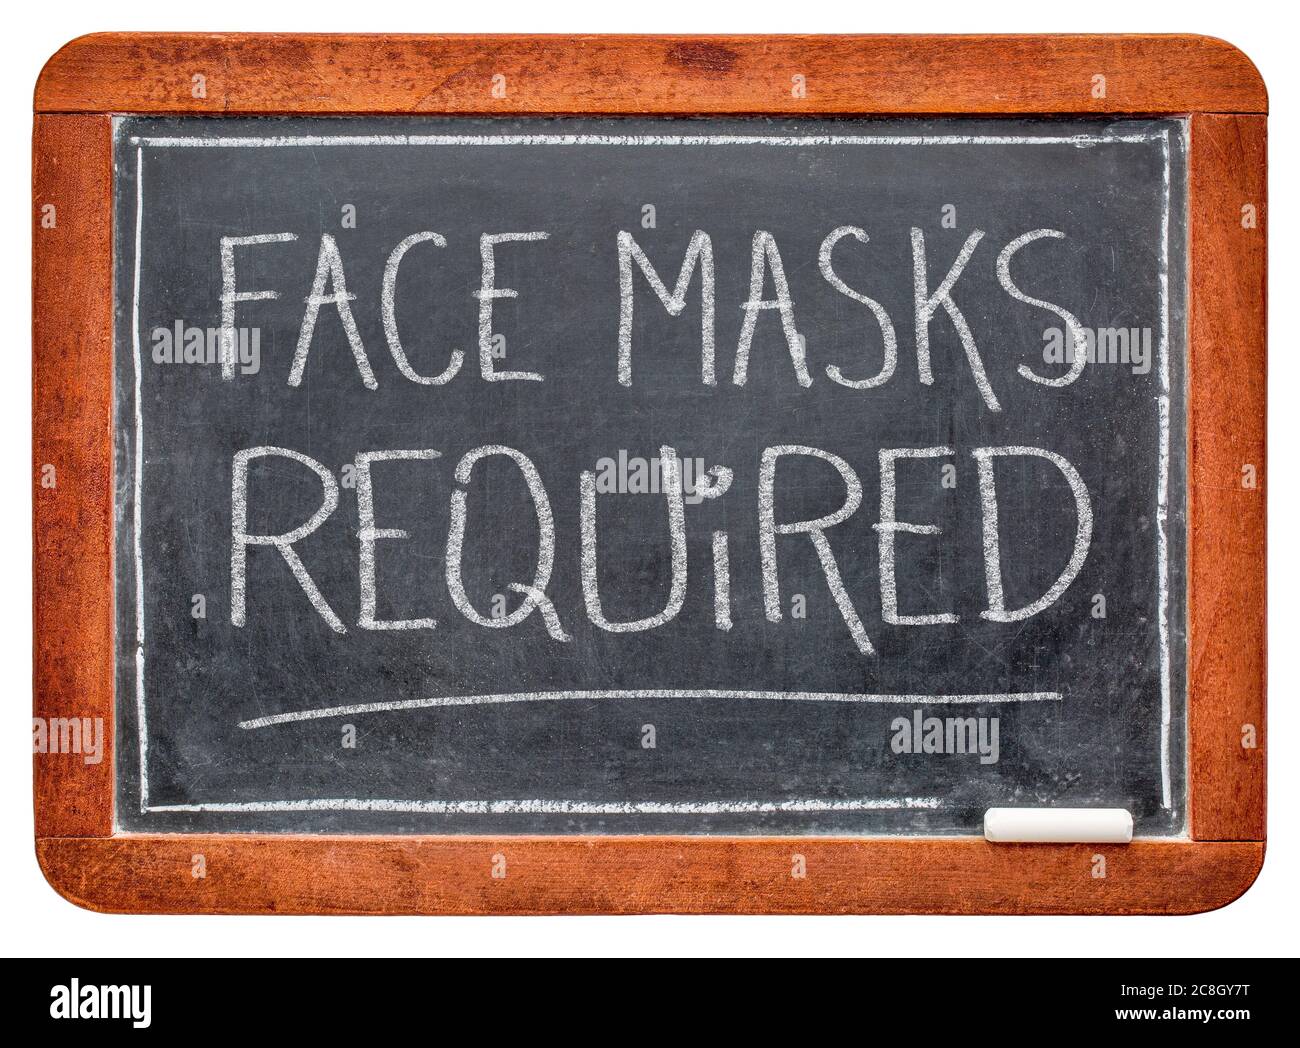 Gesichtsmasken erforderlich - weiße Kreide Handschrift auf einer Schiefertafel, Geschäftszeichen während der Coronavirus covid-19 Pandemie und soziale Distanzierung Stockfoto